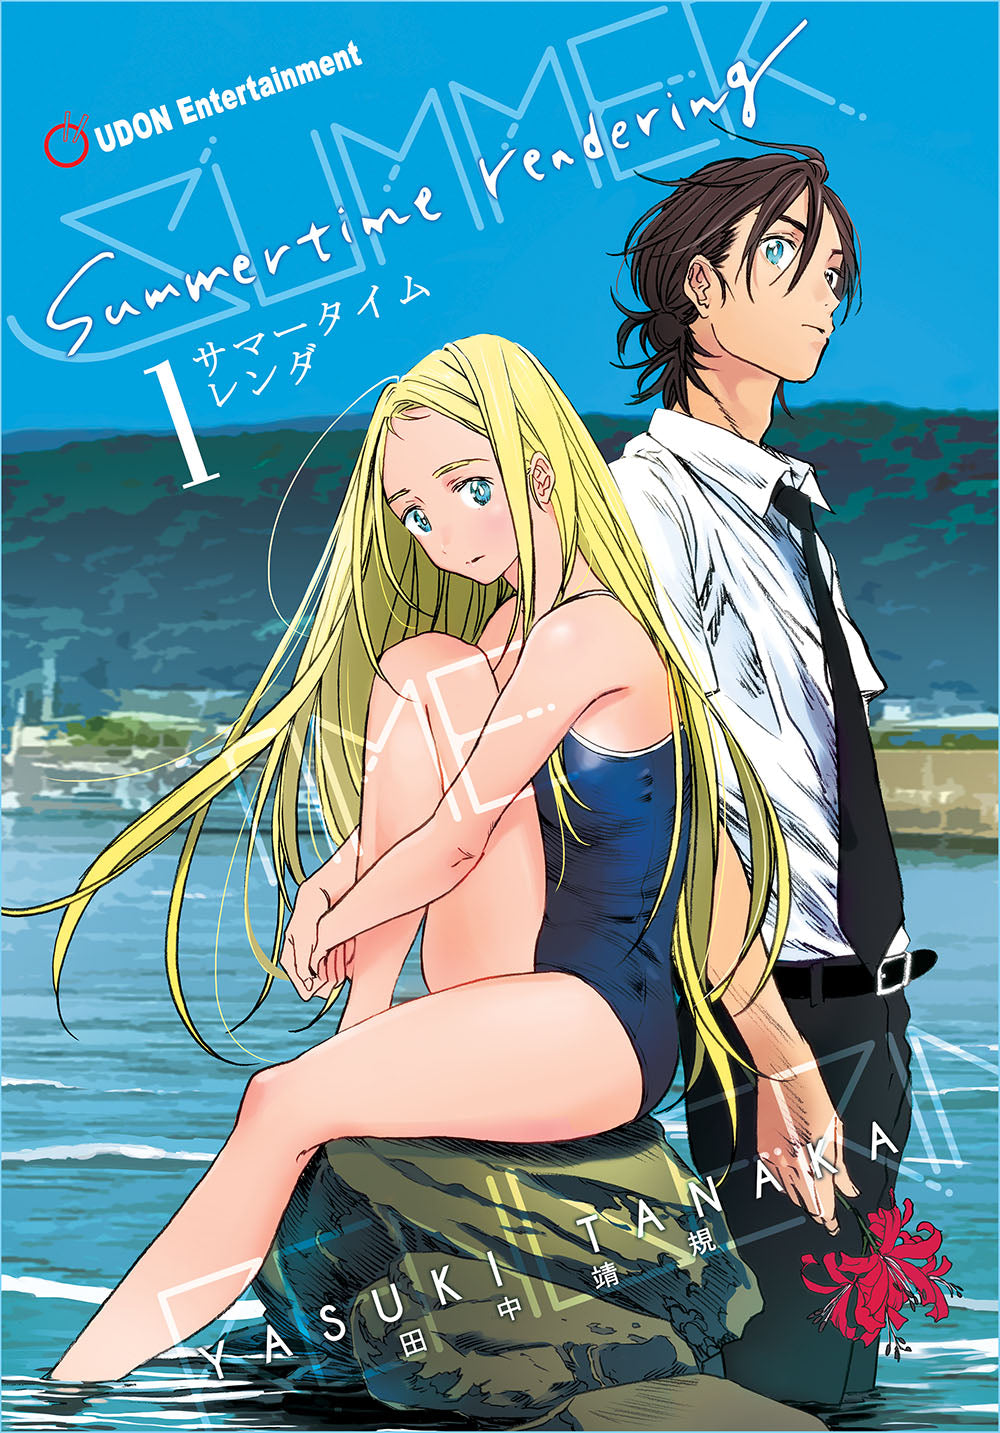 Summertime Rendering Manga Volume 3